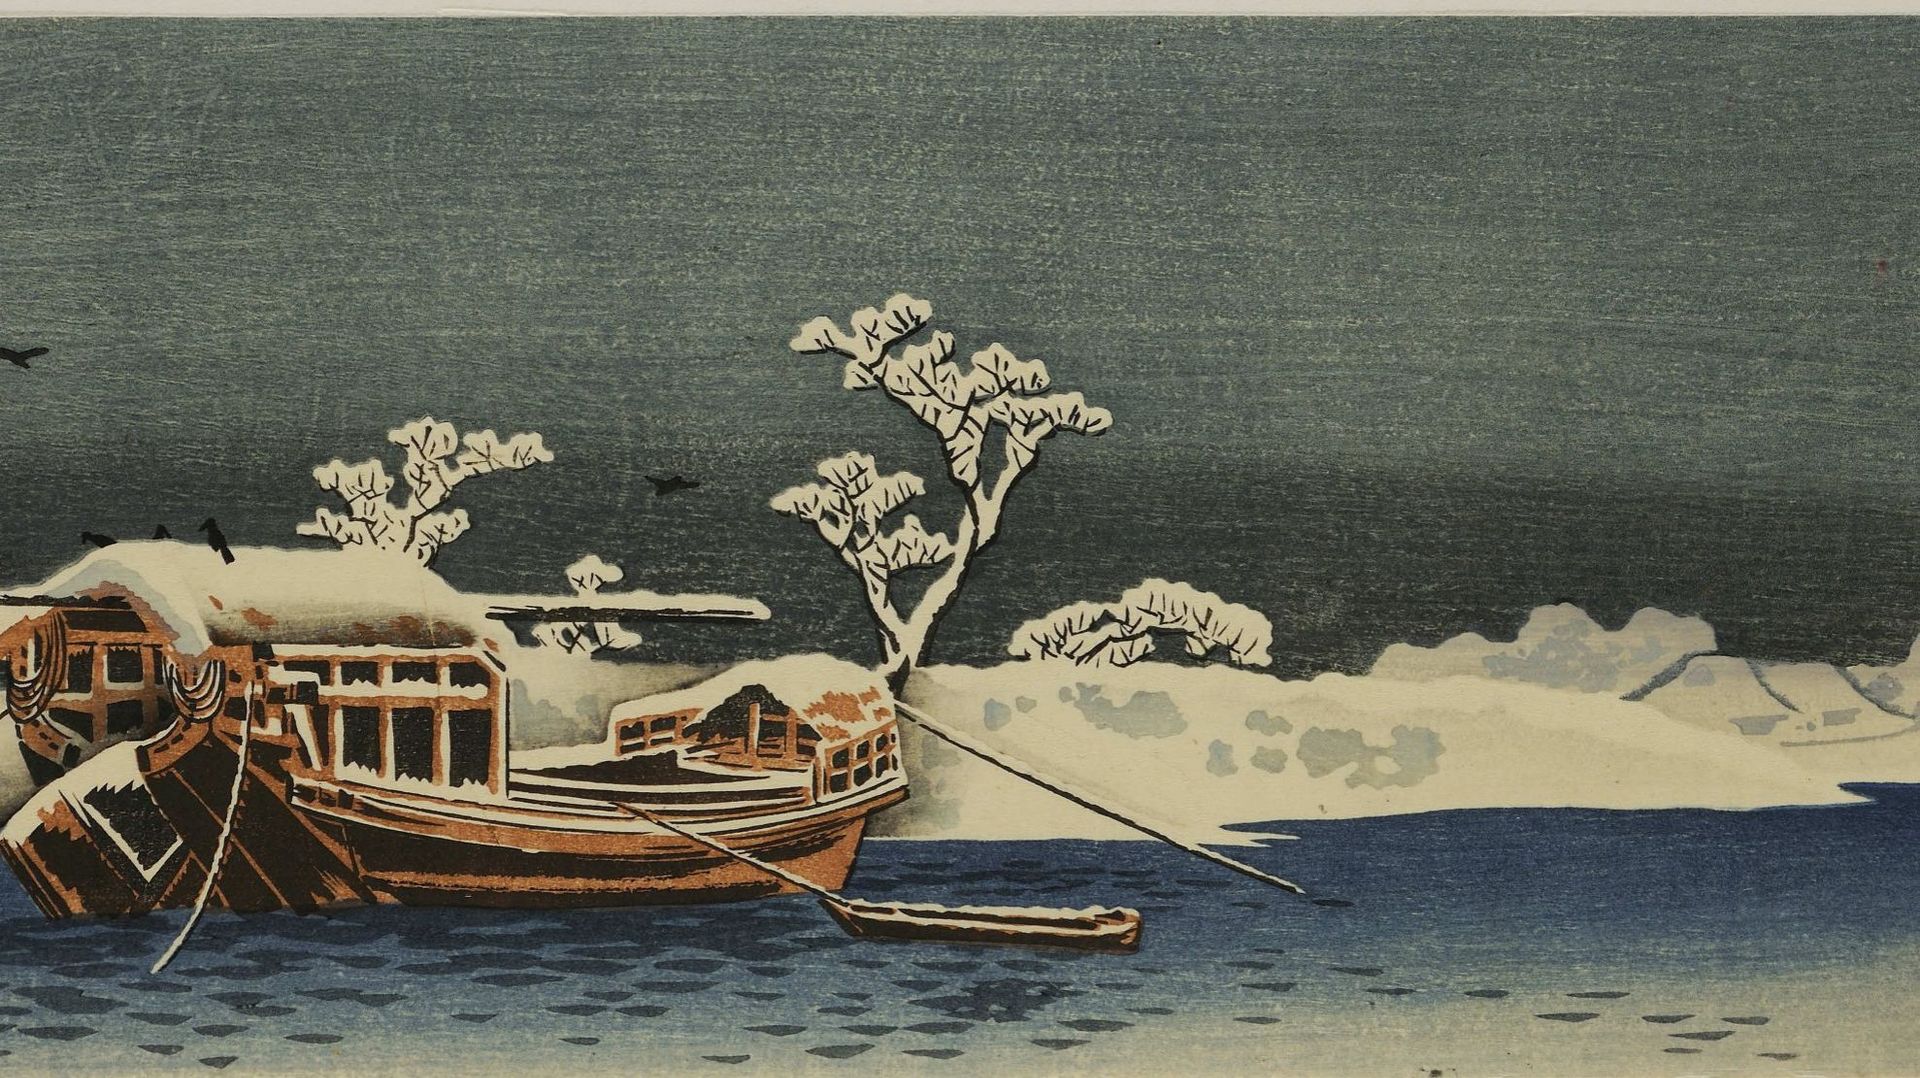 En 1910, l'éditeur Watanabe n'est plus satisfait du travail de Takahashi Shōtei qui perpétue un style traditionnel plat et avec peu de nuances de couleurs. "Bateau sur une rivière par temps de neige"

